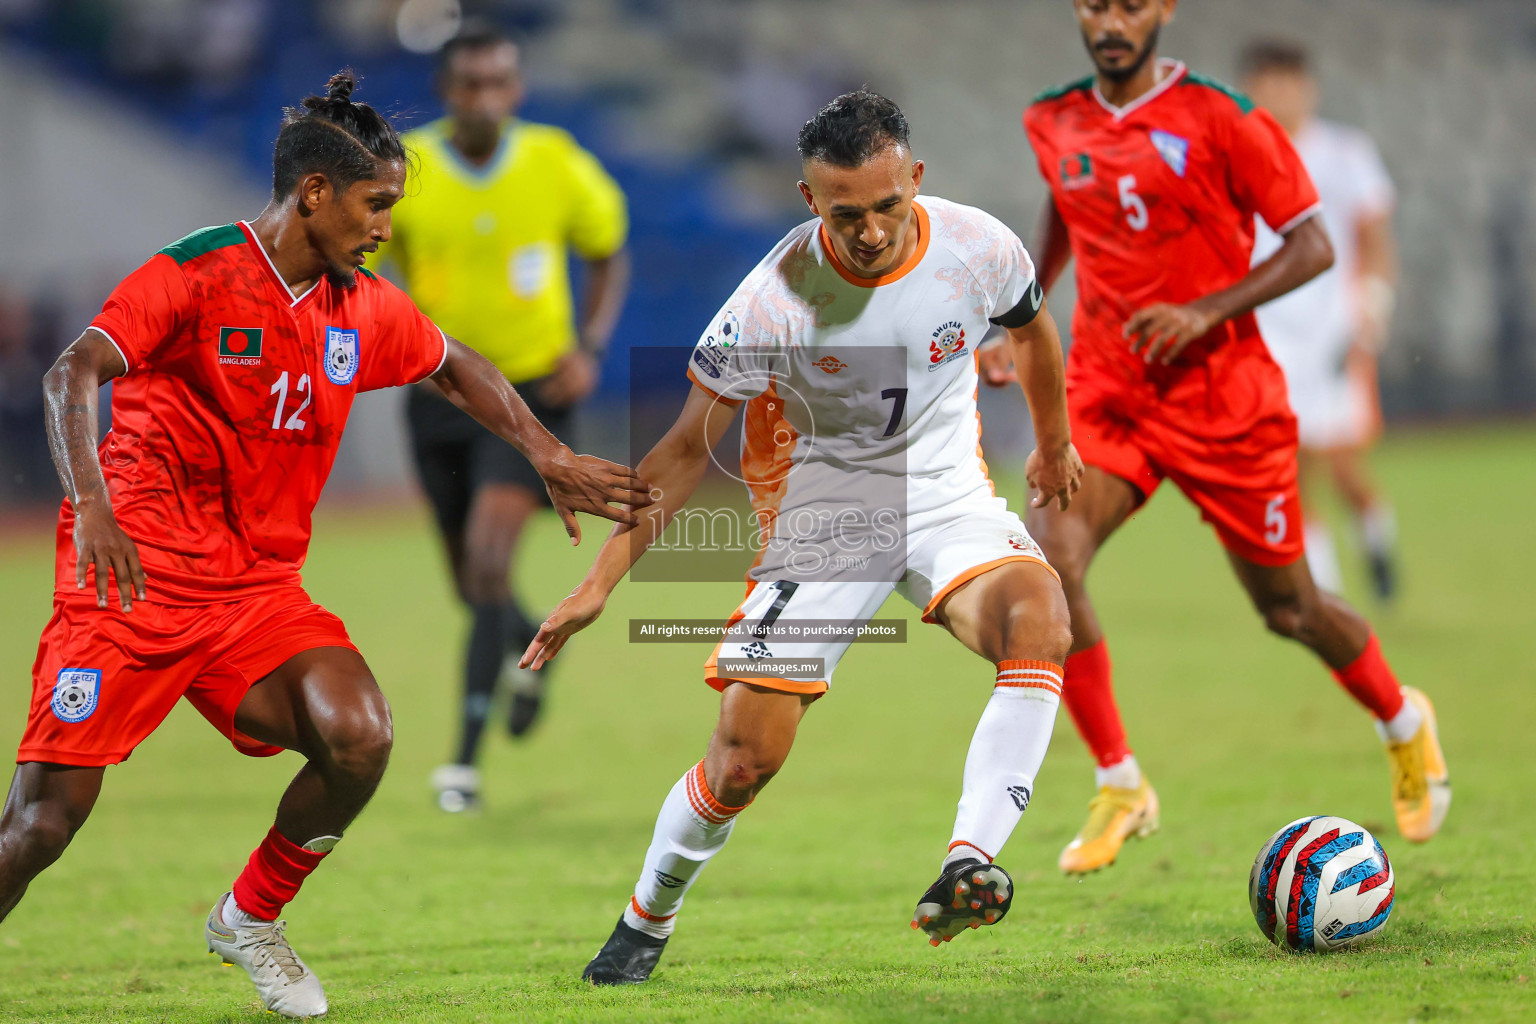 Bhutan vs Bangladesh in SAFF Championship 2023 held in Sree Kanteerava Stadium, Bengaluru, India, on Wednesday, 28th June 2023. Photos: Nausham Waheed / images.mv